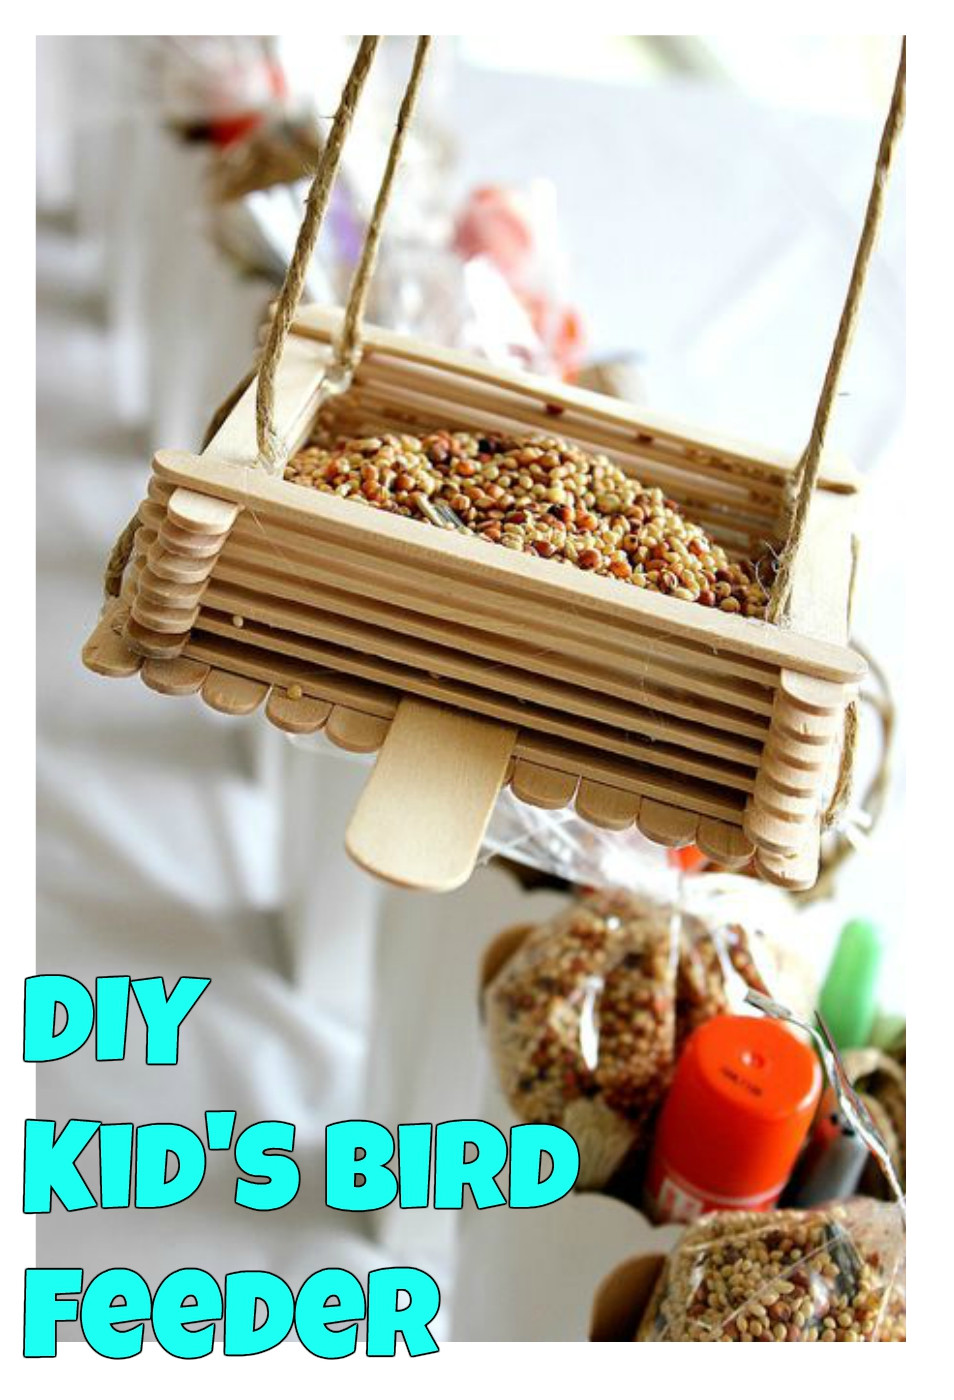 Best ideas about DIY Bird Feeder For Kids
. Save or Pin DIY Kids Bird Feeder Super Simple Kid s Crafts Now.